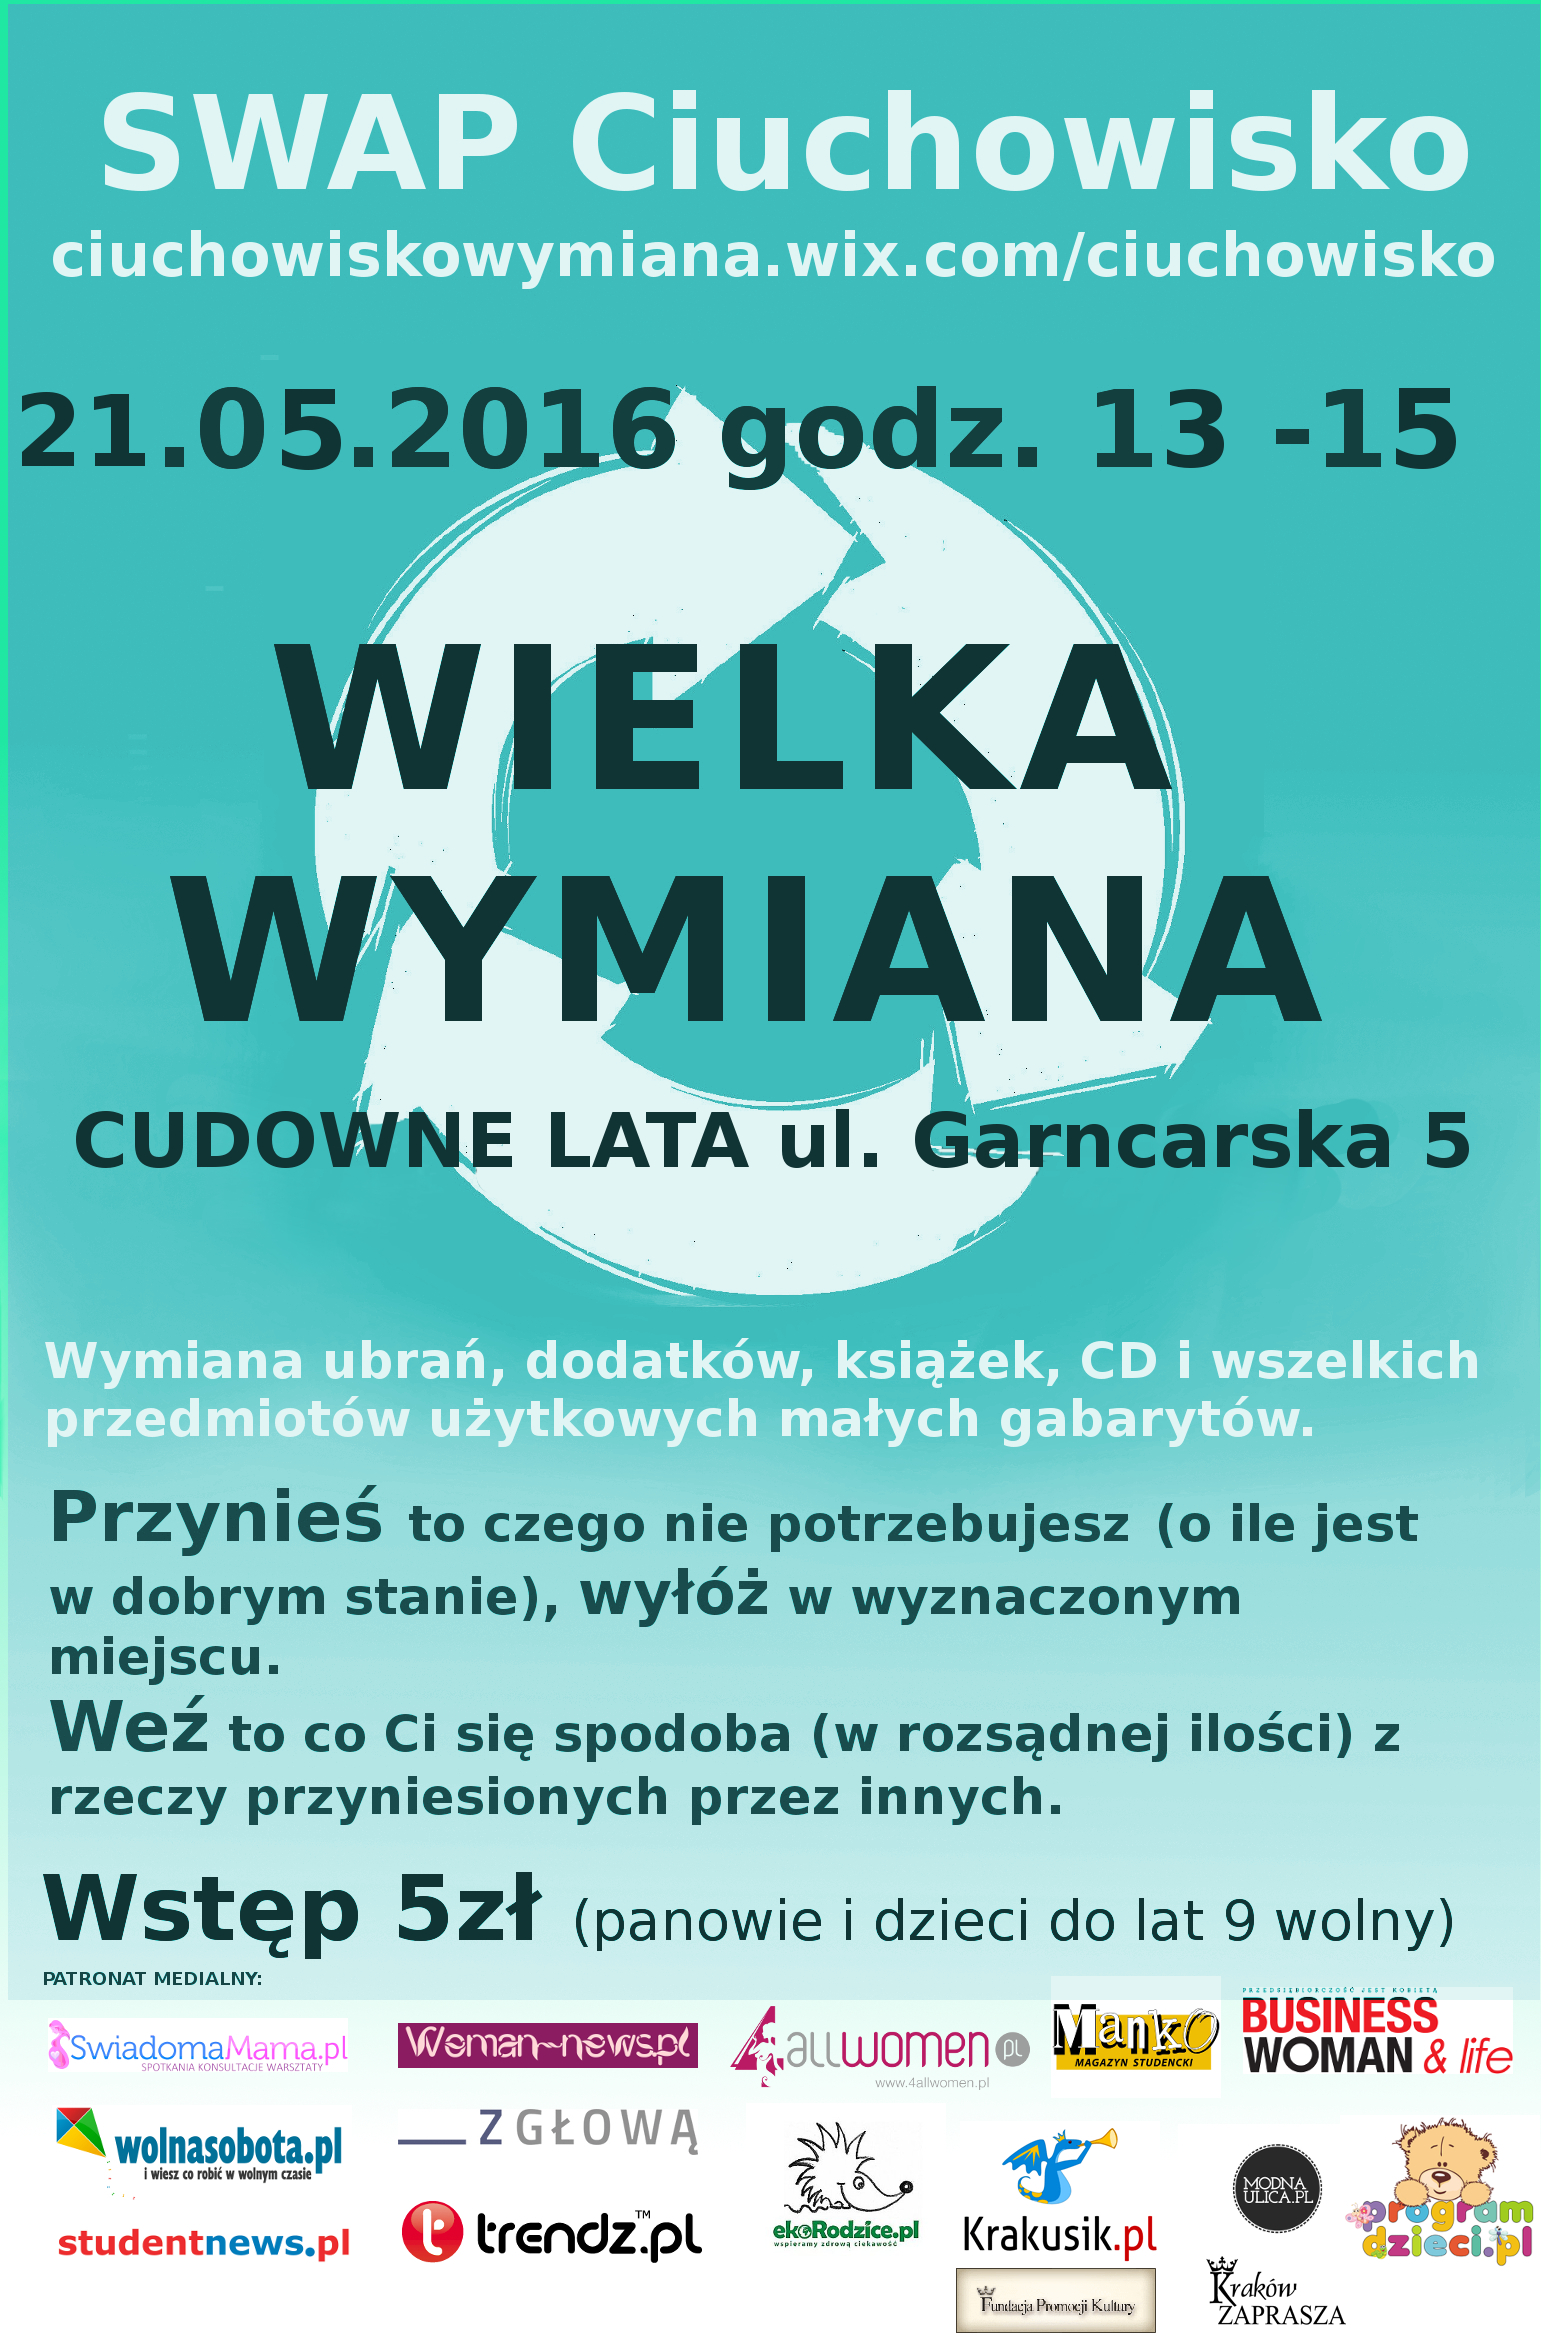 Uwaga - Krakowskie Ciuchowisko już 21 maja, godz. 13-15